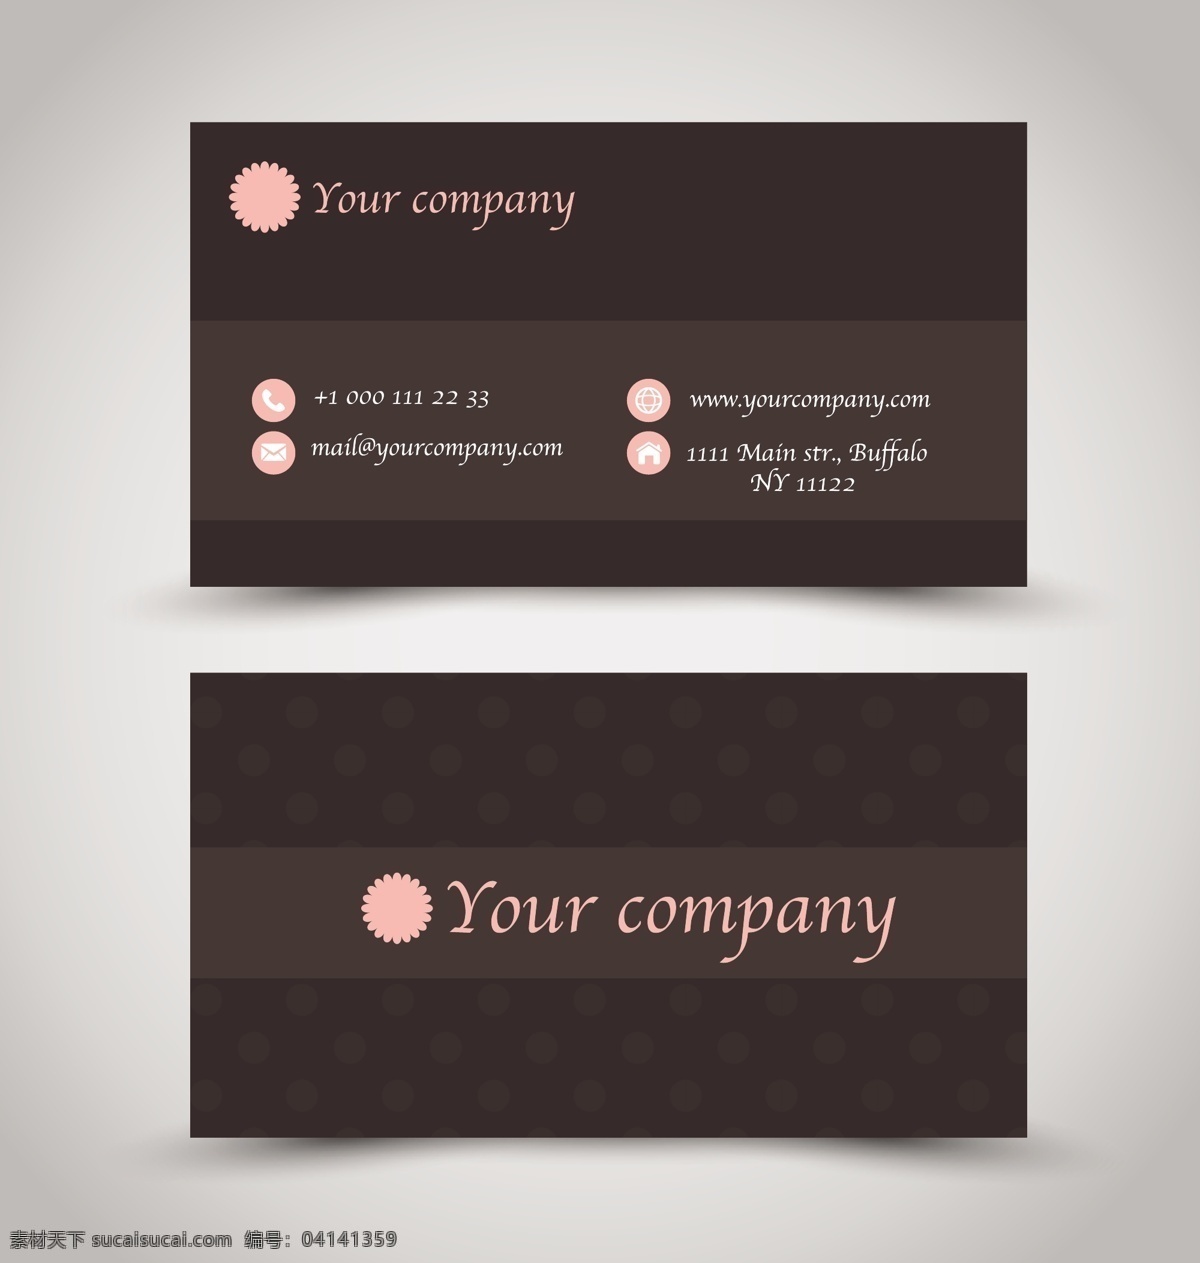 创意 商务 正式 名片 矢量 模板 棕色 卡片 矢量素材 设计素材